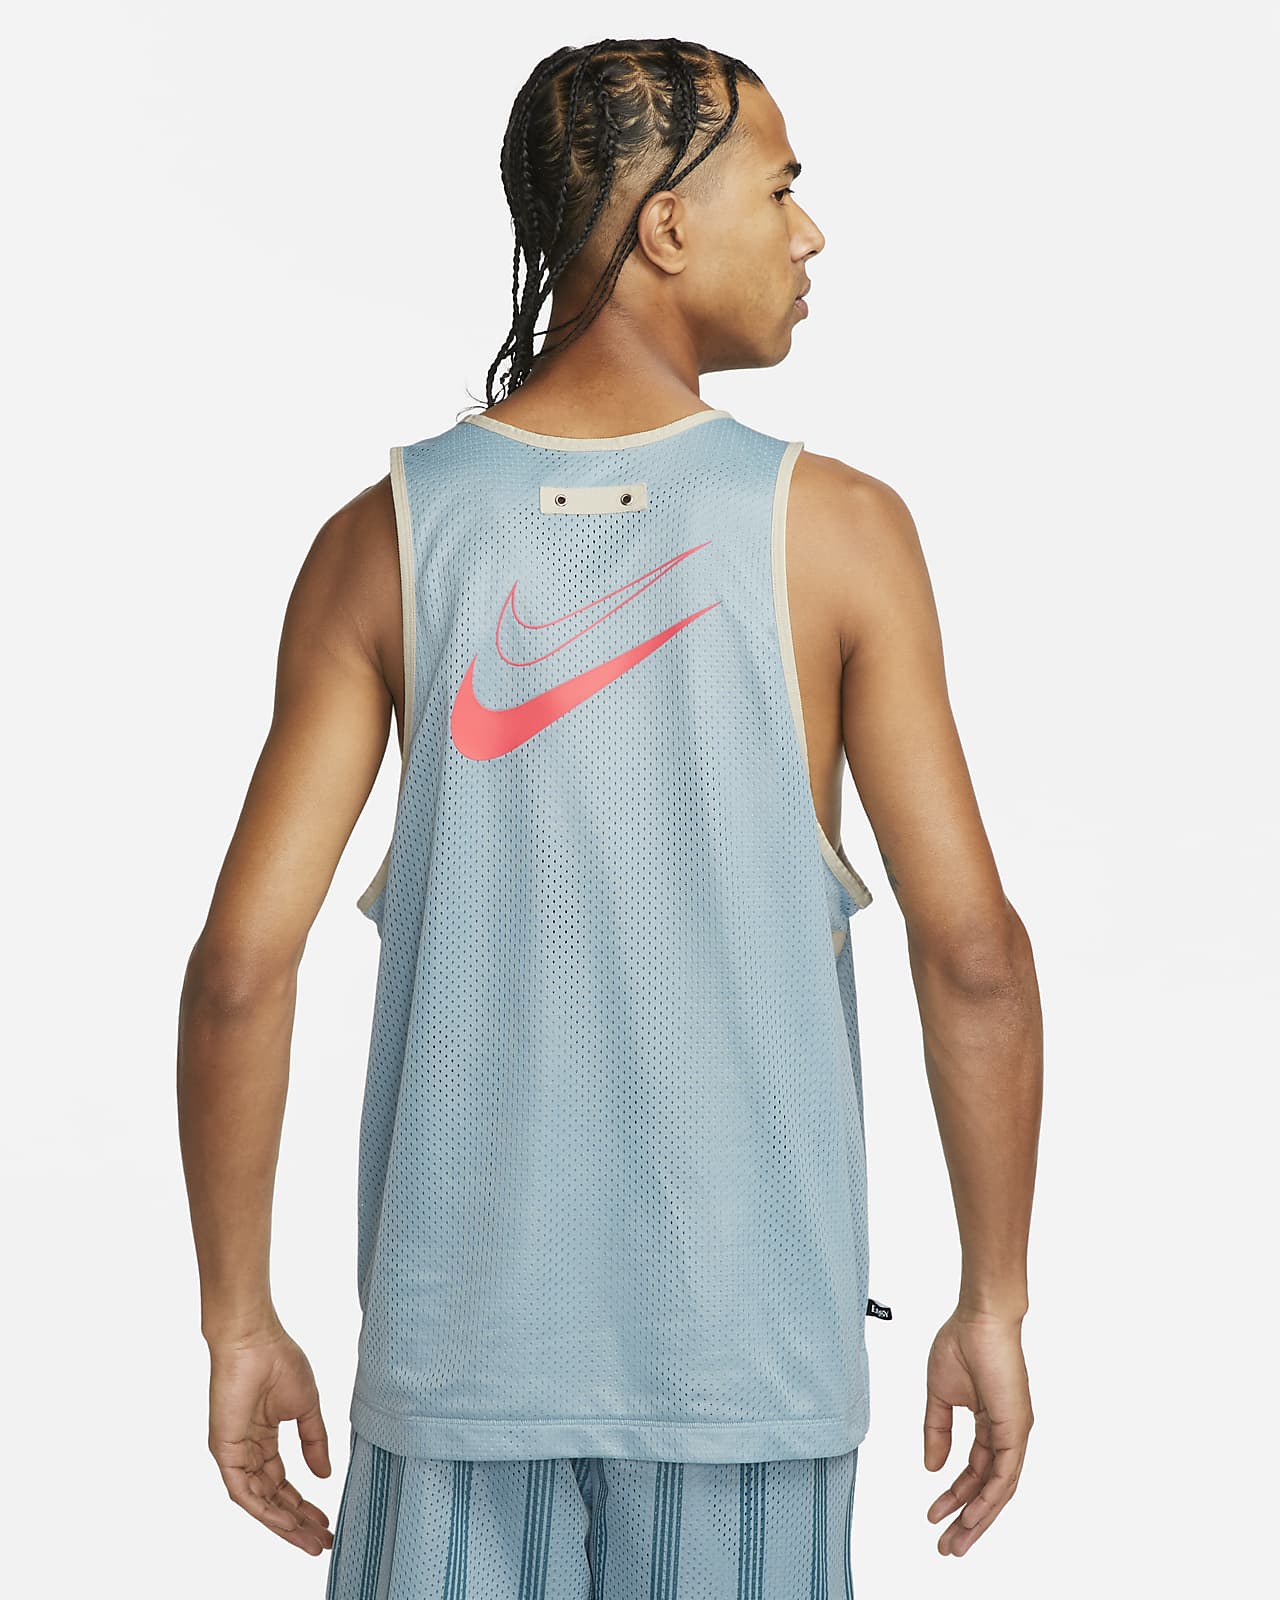 Nike Team USA (Kevin Durant) (Primera equipación) Camiseta de baloncesto  Nike - Niño/a. Nike ES